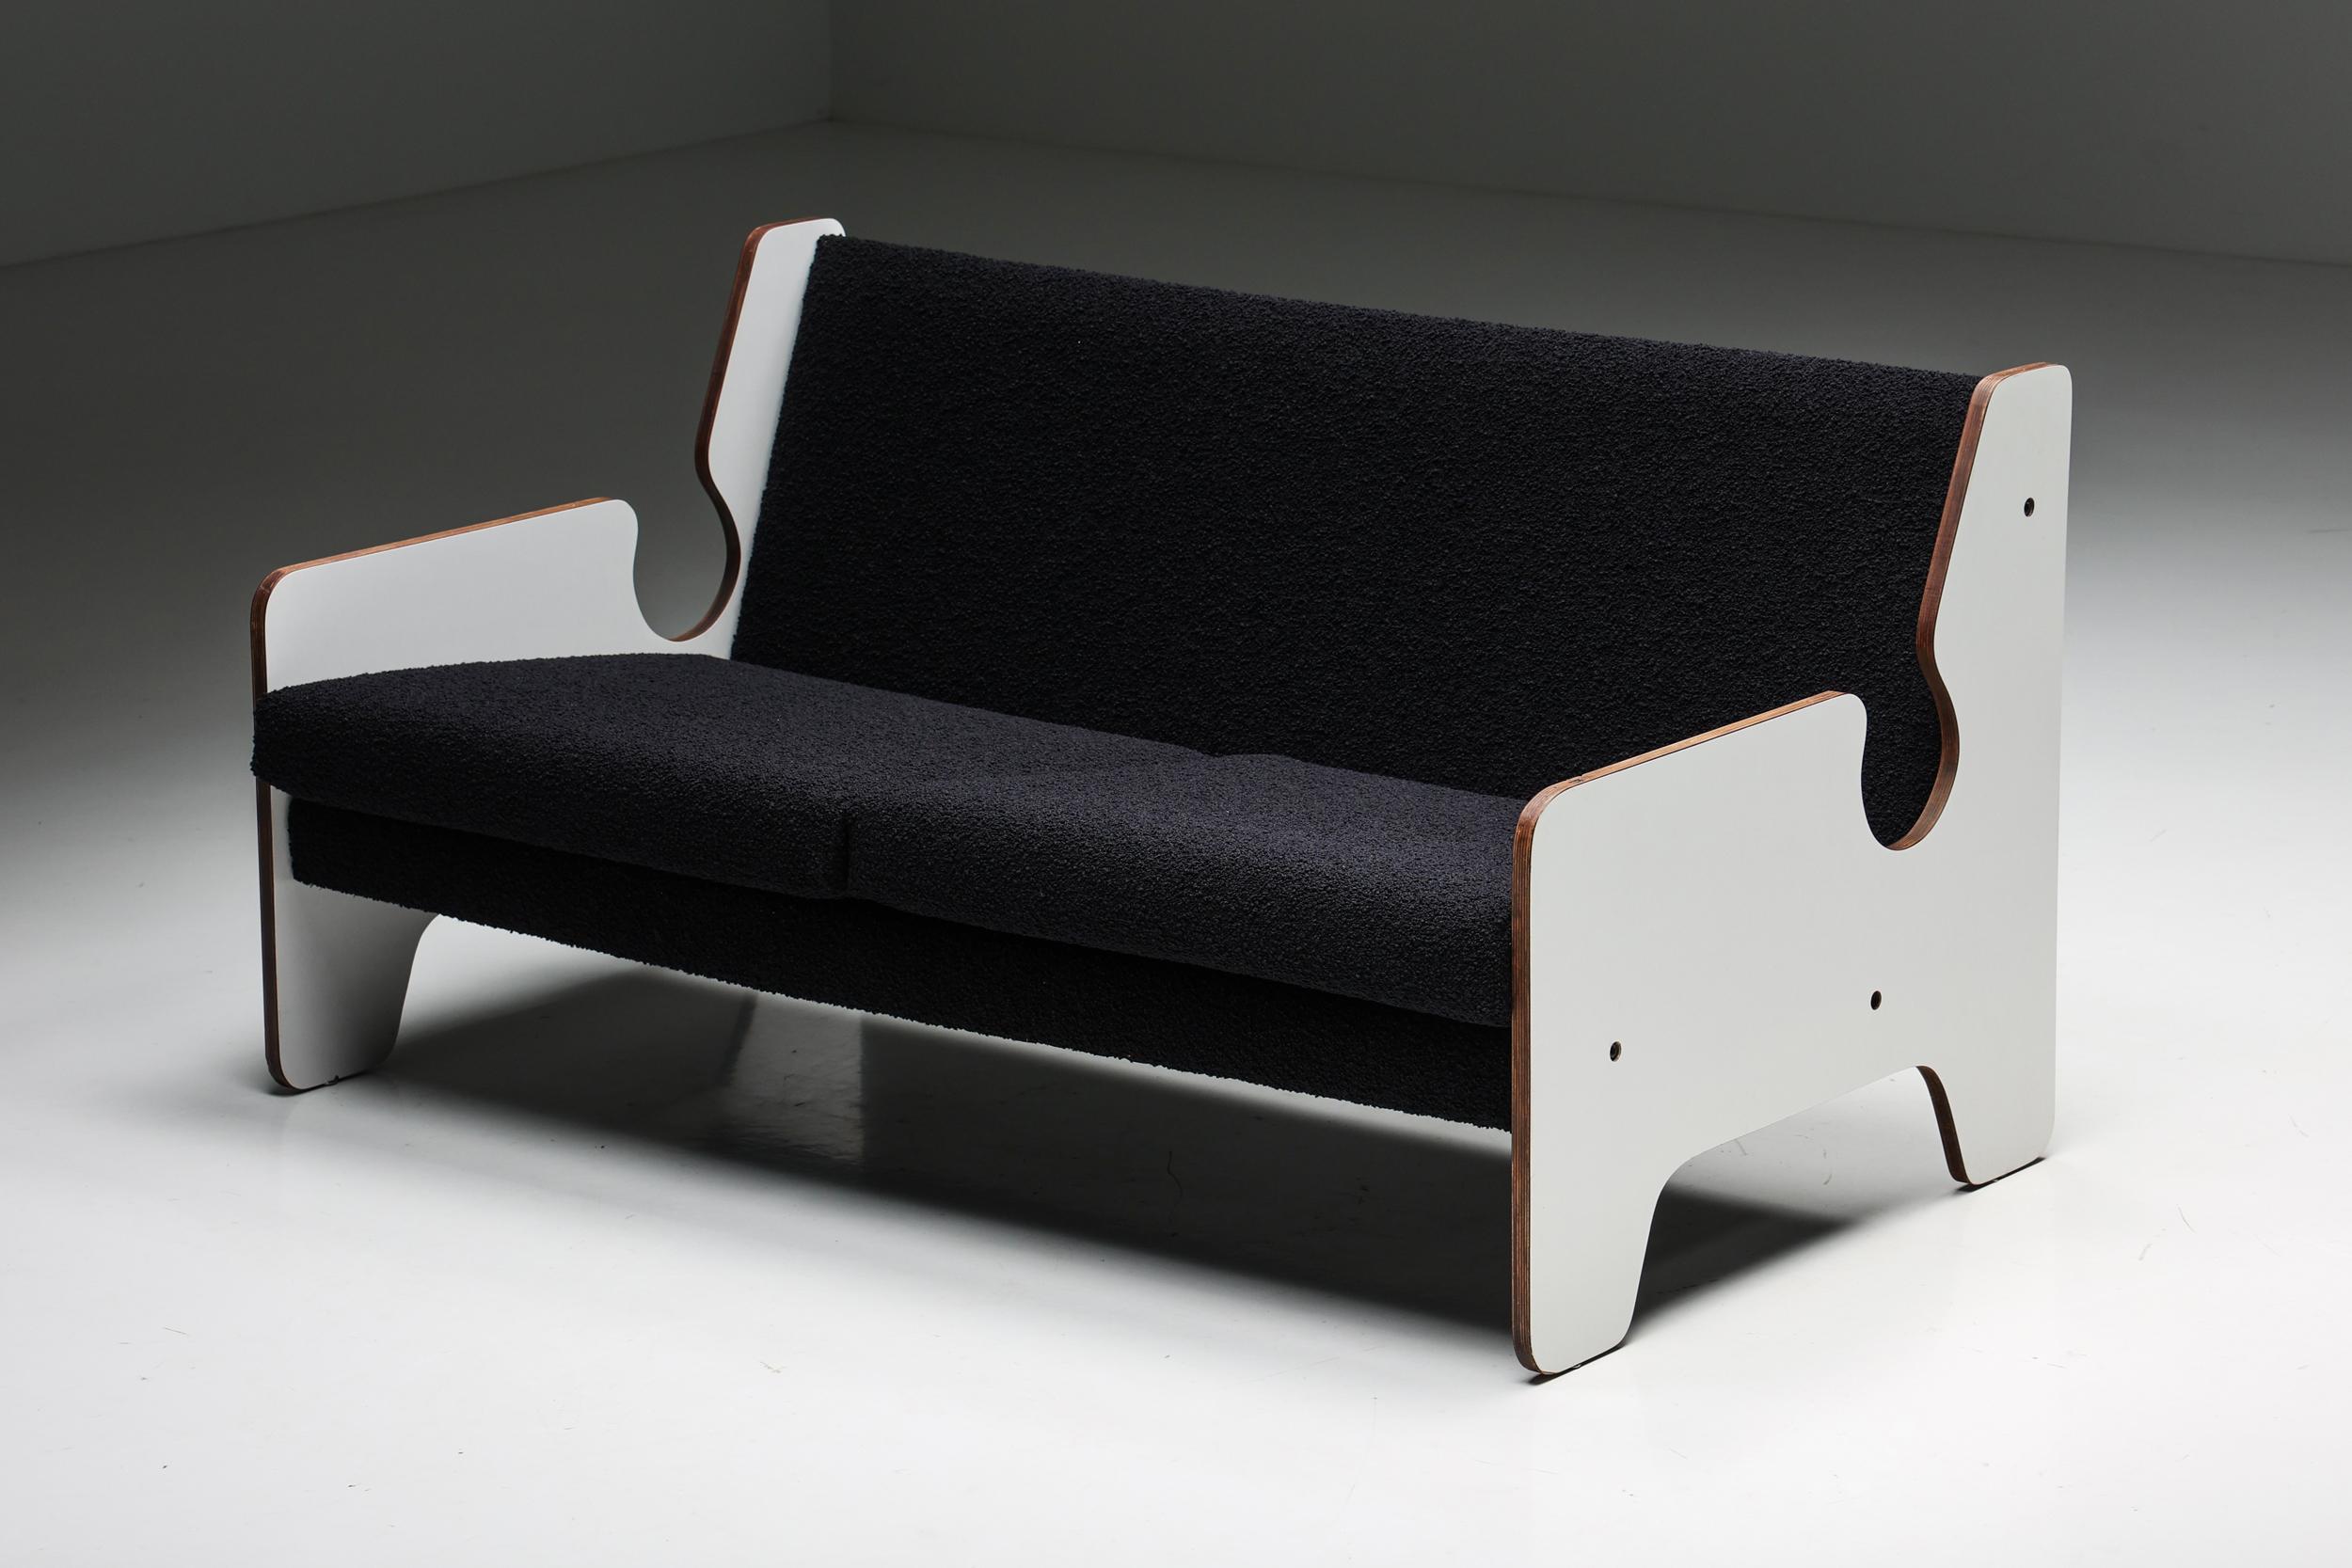 Italienisches, postmodernes, schwarz-weißes Zweisitzer-Sofa, ein wunderschönes Möbelstück, das die zeitlose Eleganz der 1970er Jahre nahtlos mit einer zeitgenössischen Note verbindet. Das mit Bouclé-Stoff bezogene, einzigartige Sofa ist in einem